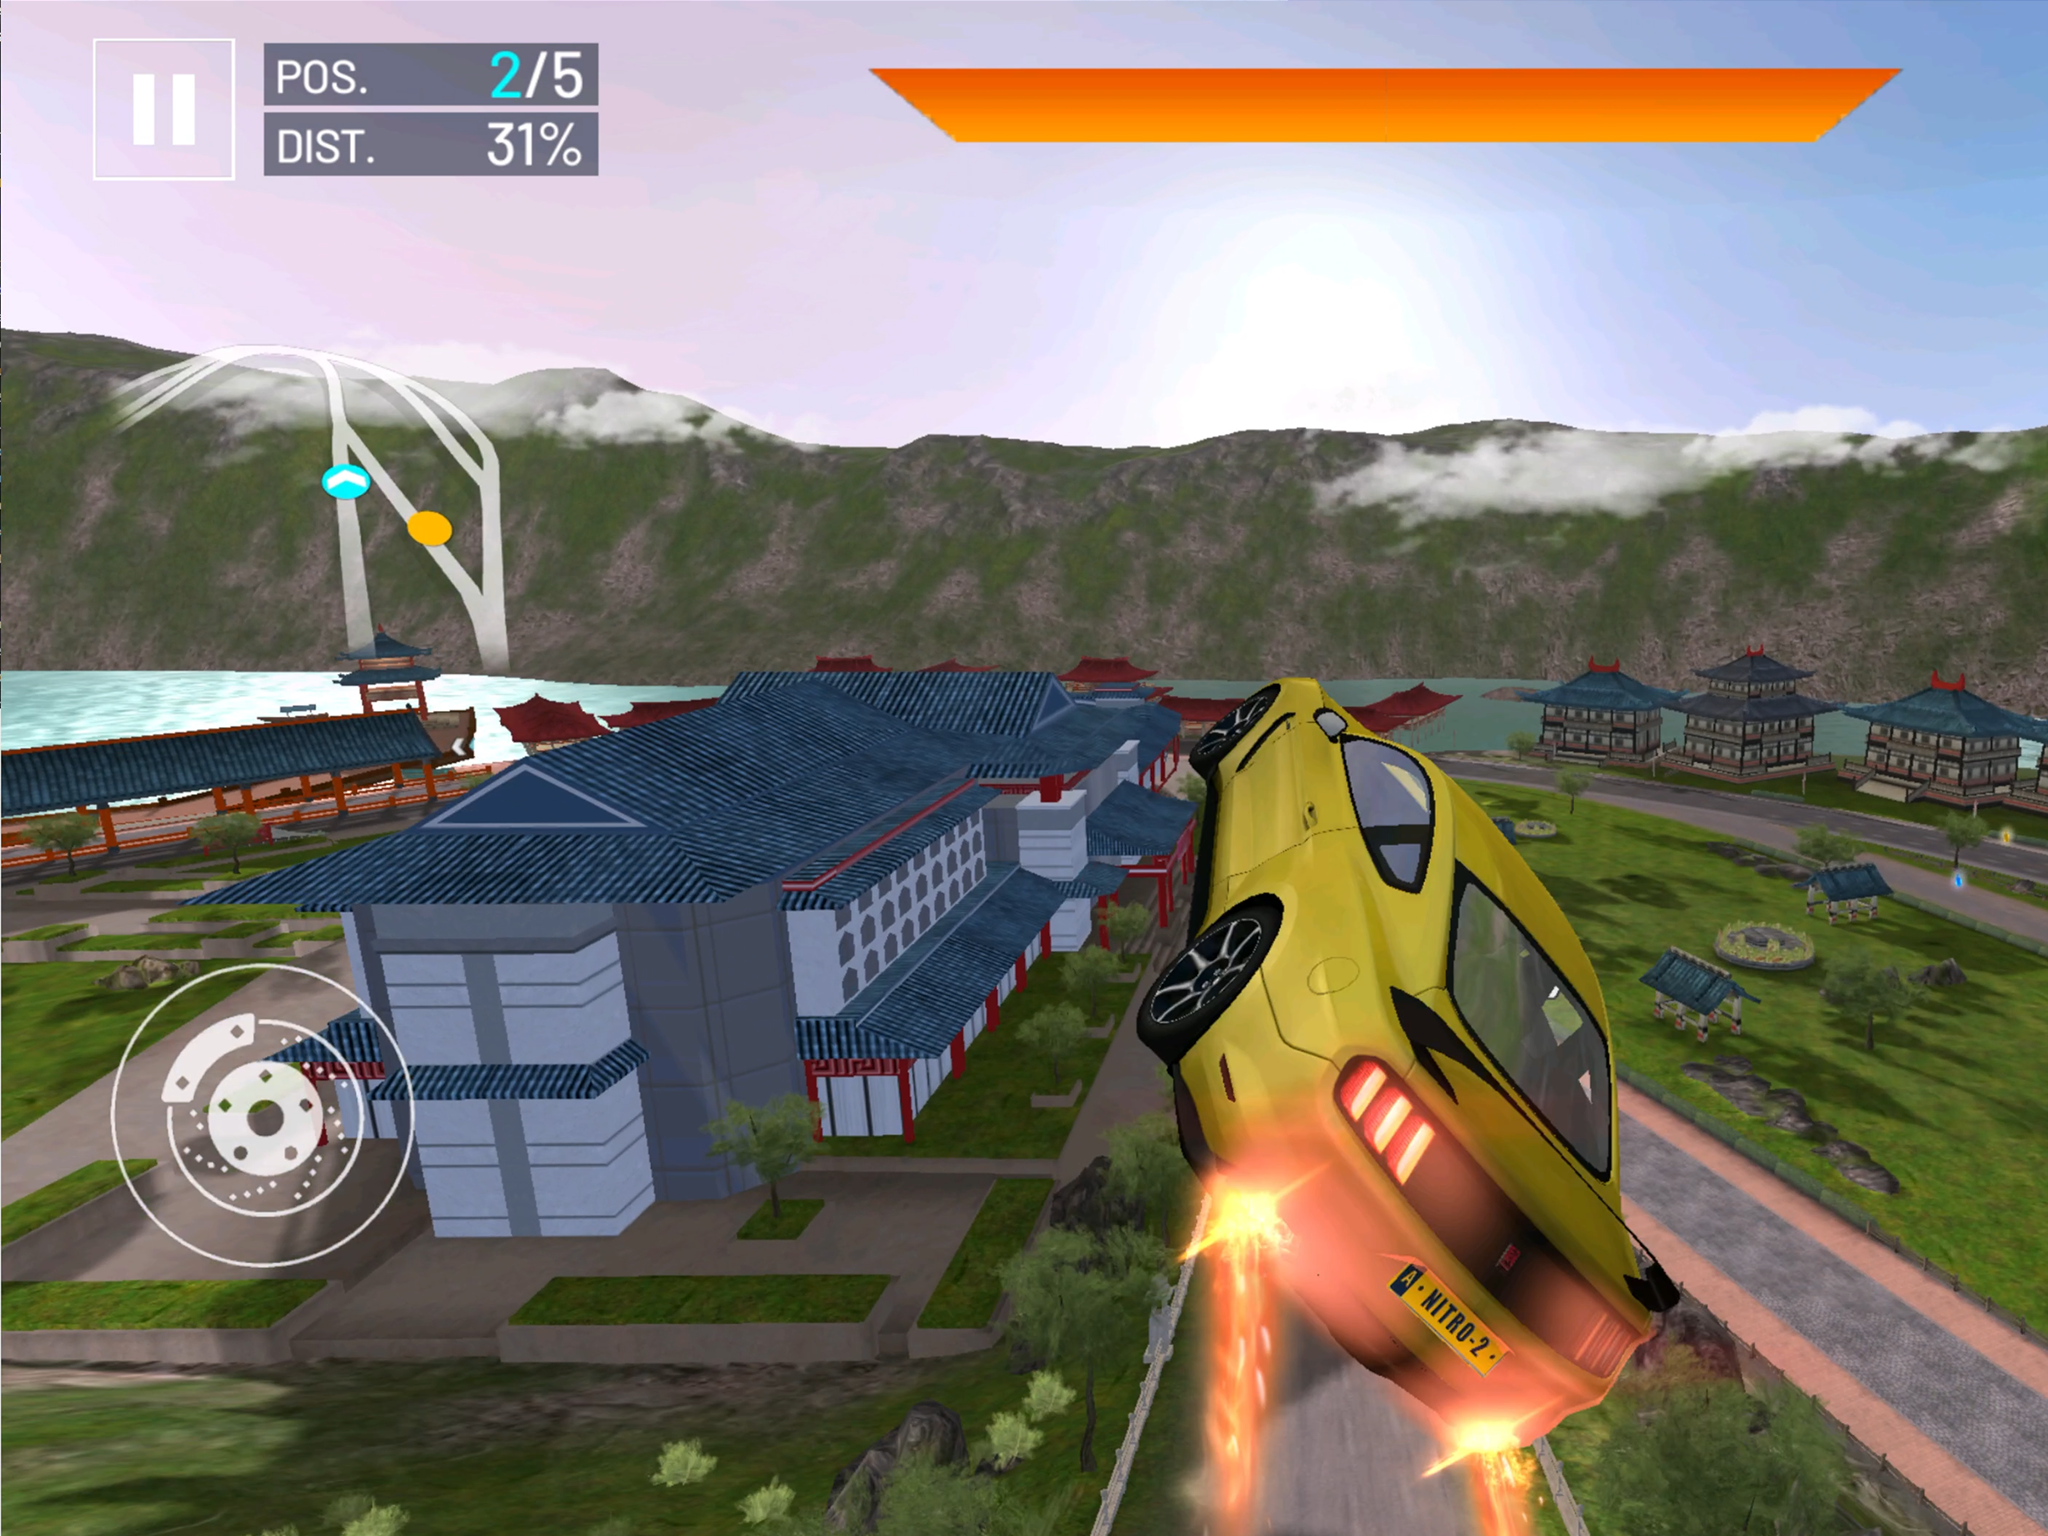 Asphalt Nitro 2 screenshot game